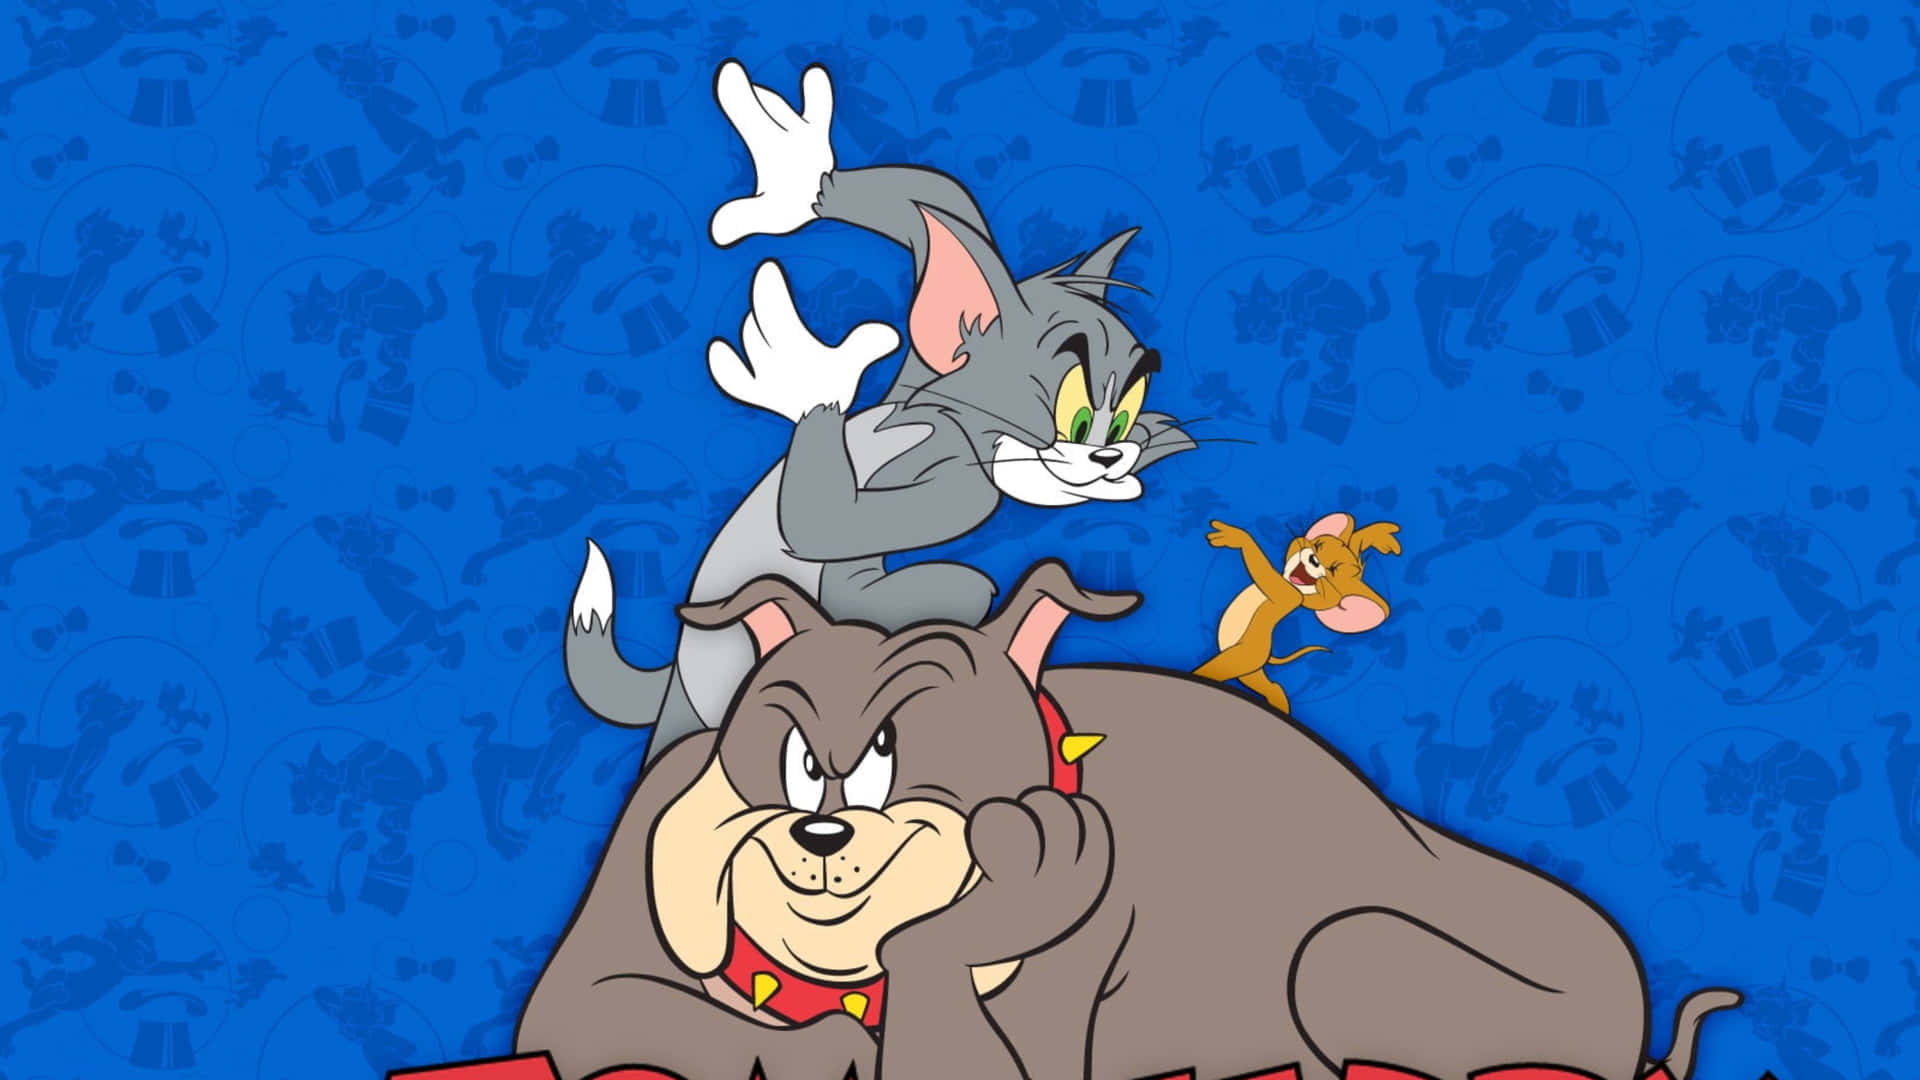 Tomy Jerry Envueltos En Sus Travesuras Habituales En Esta Escena Hilarante. Fondo de pantalla